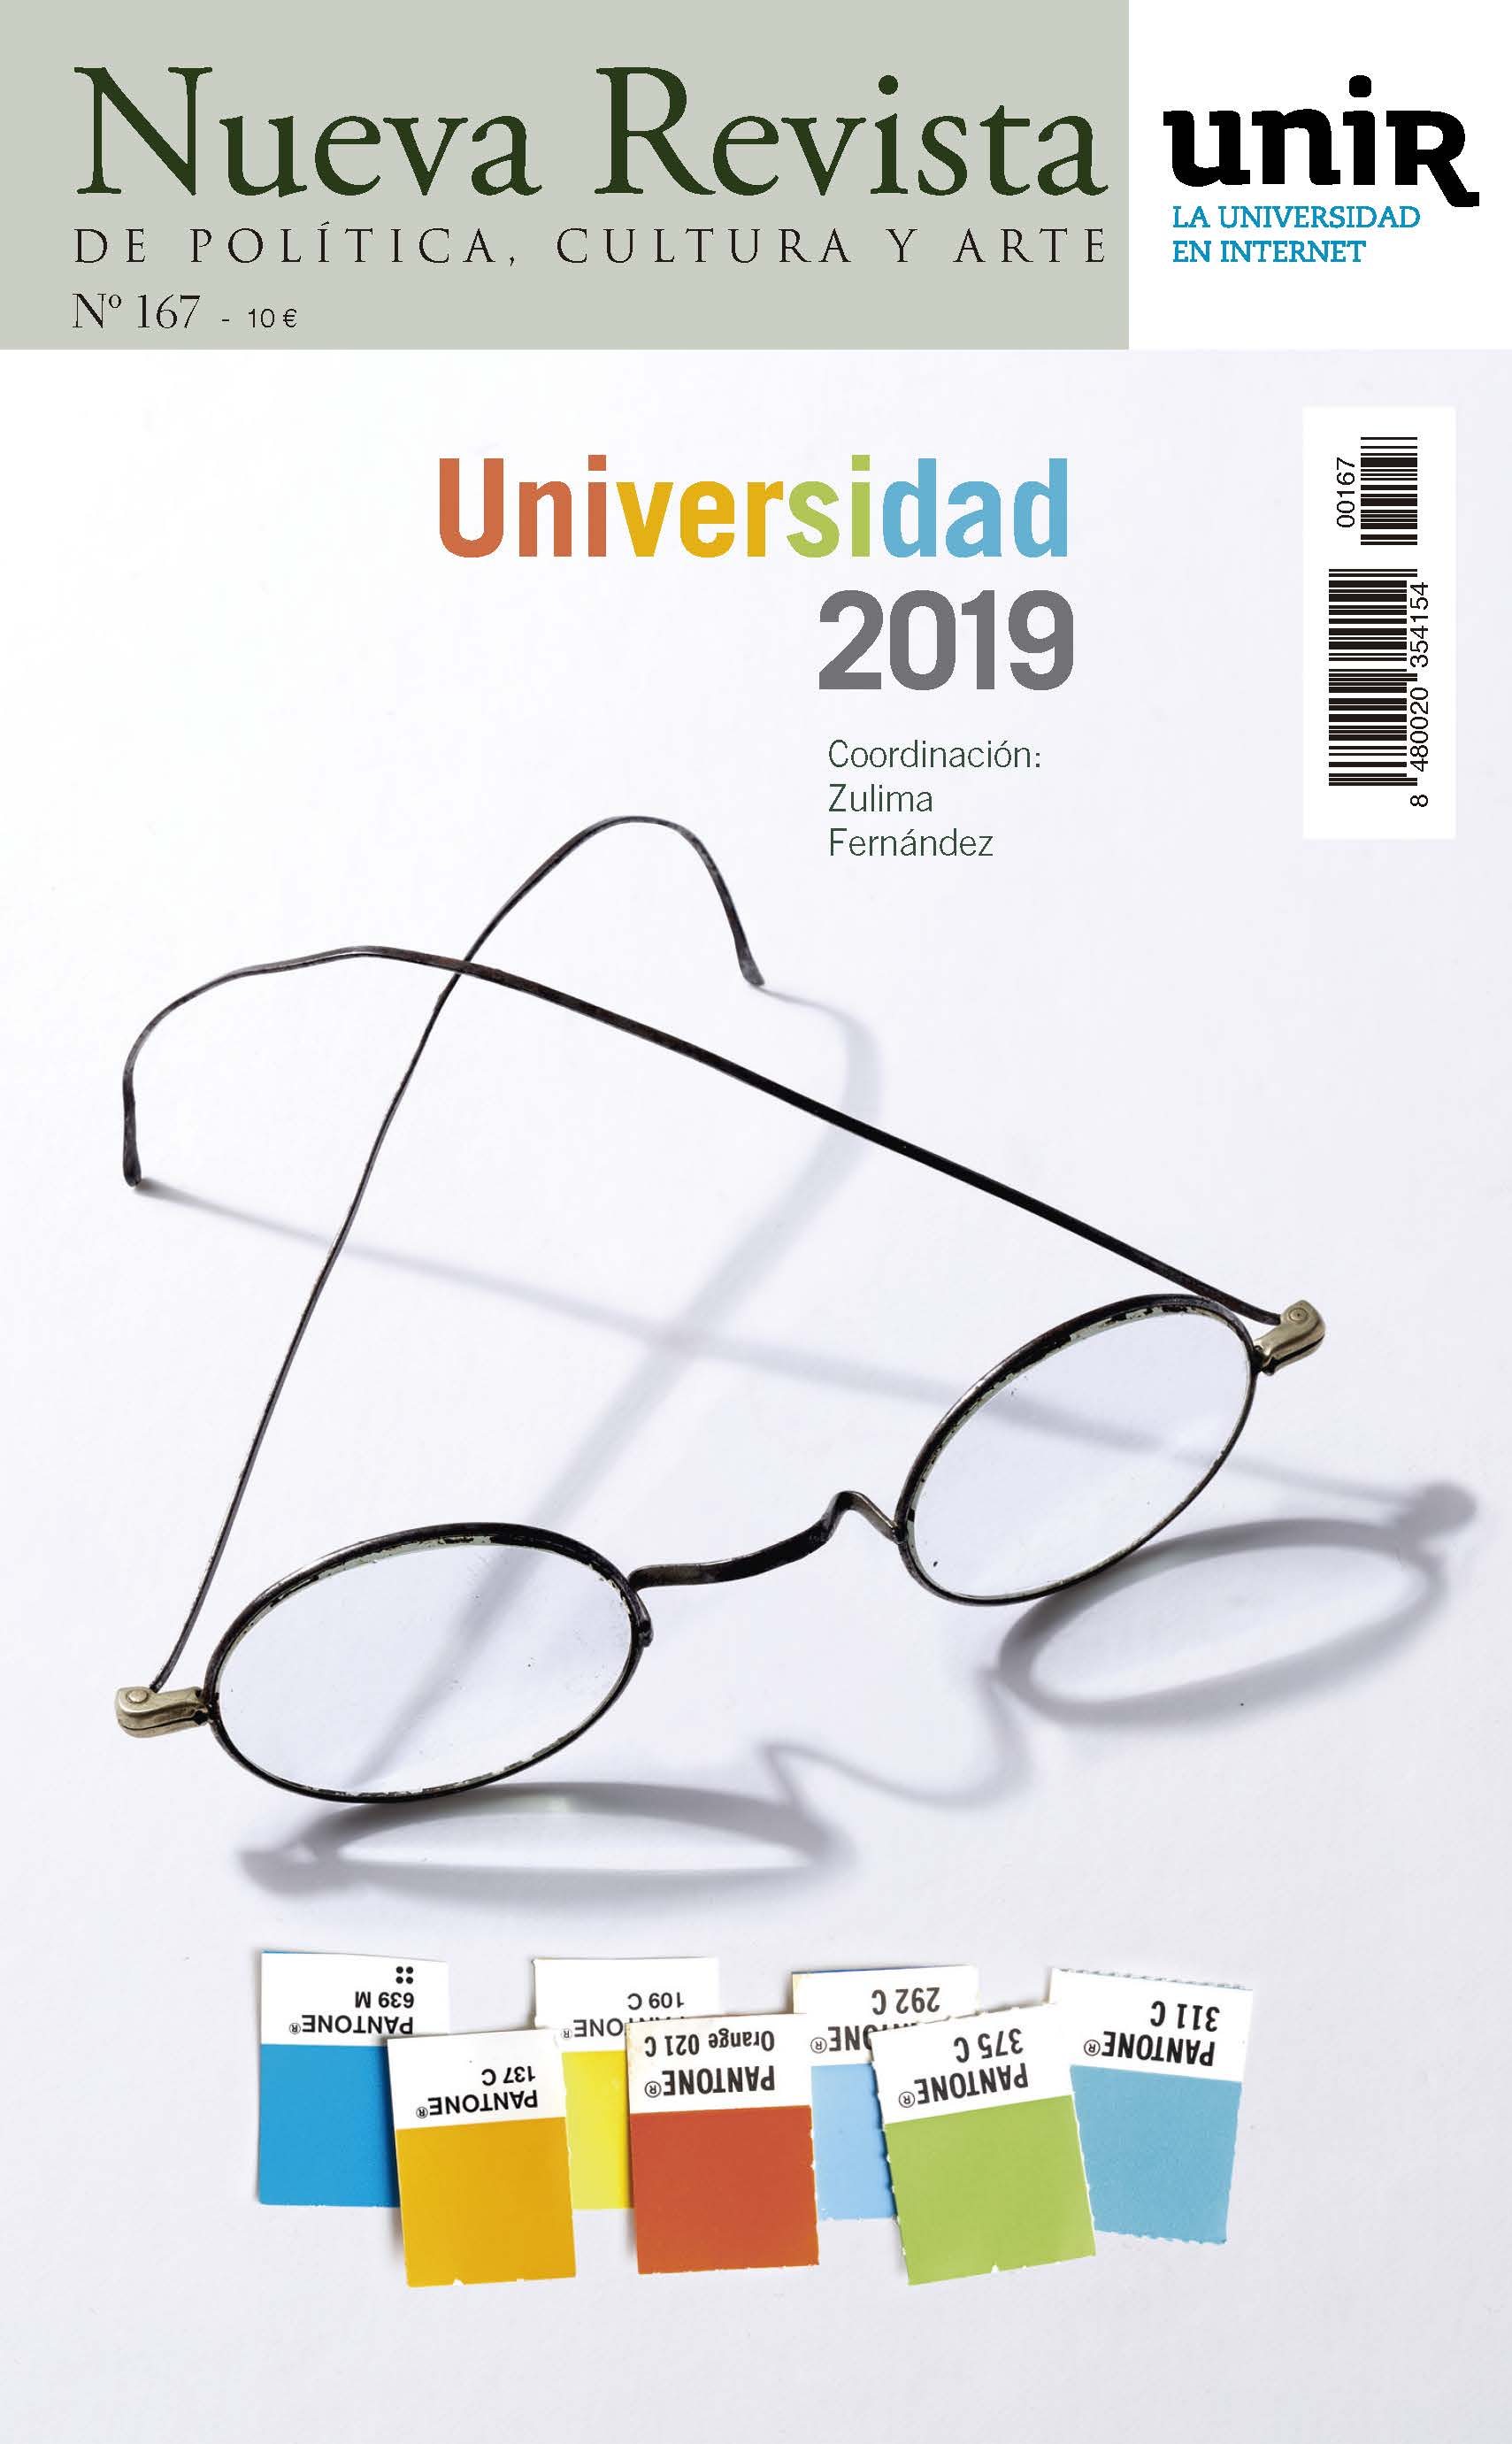 Número 167 de Nueva Revista dedicado a la Universidad, Universidad 2019